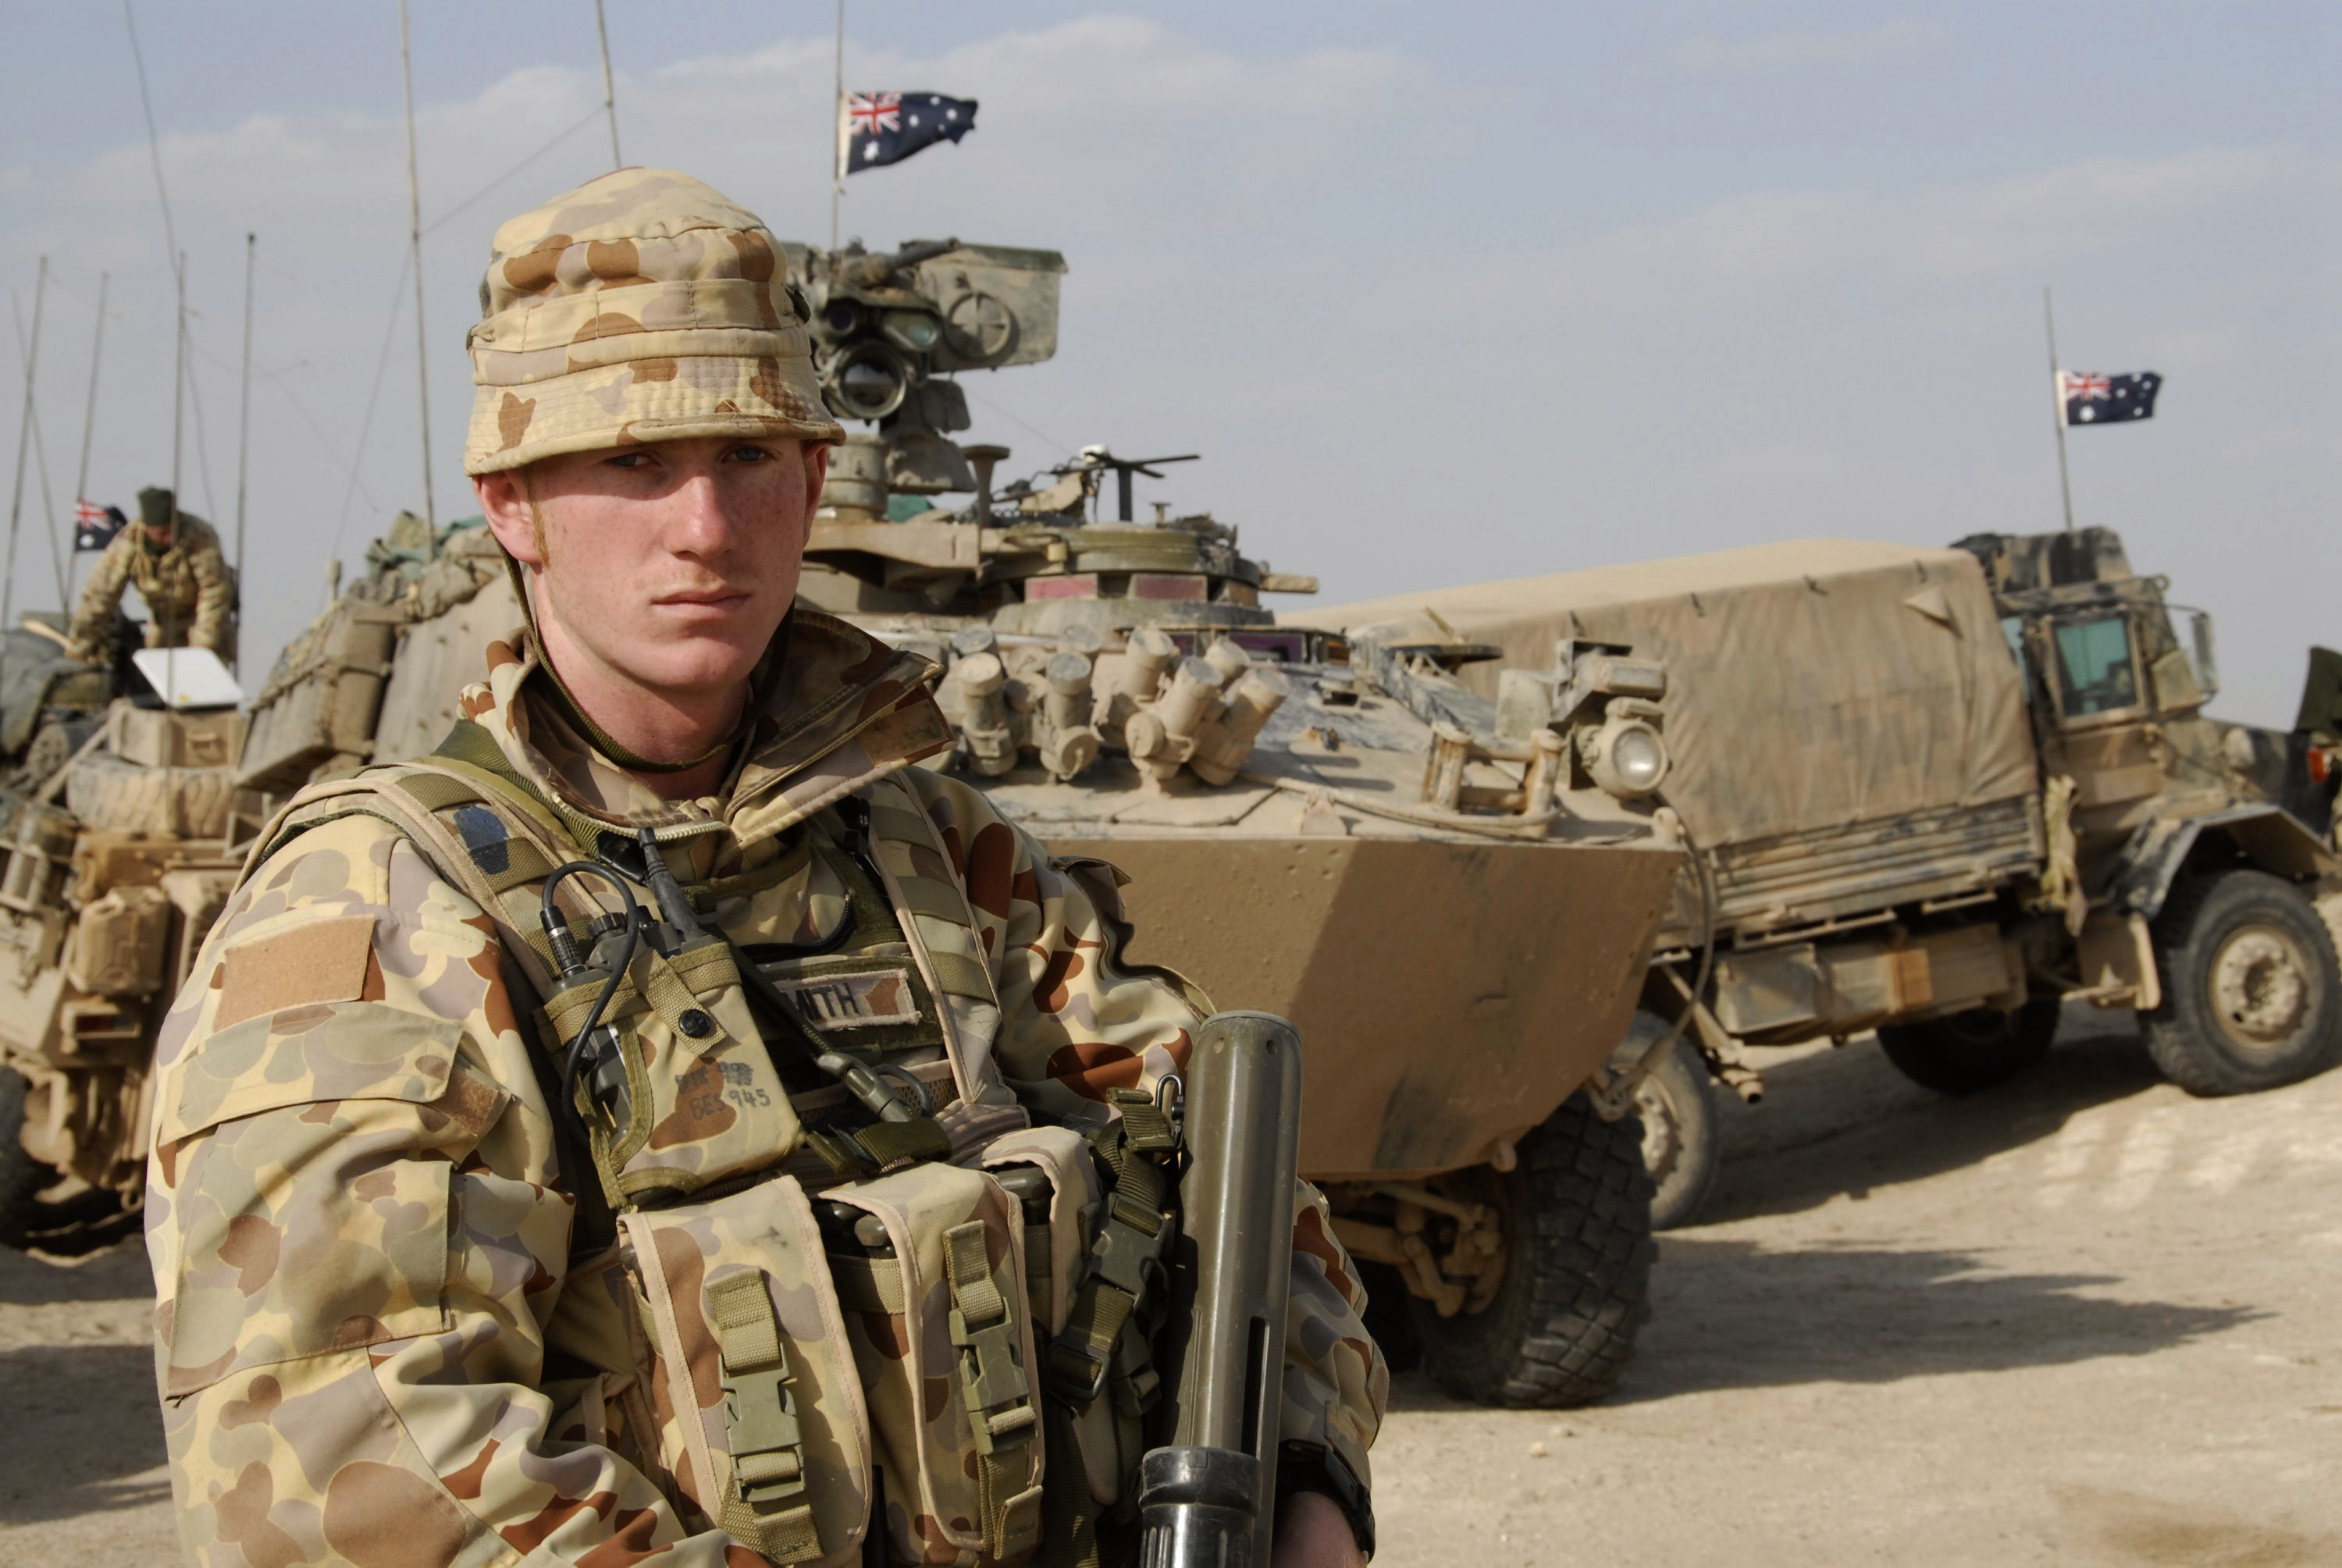 Скачать обои Австралийская Армия на телефон бесплатно